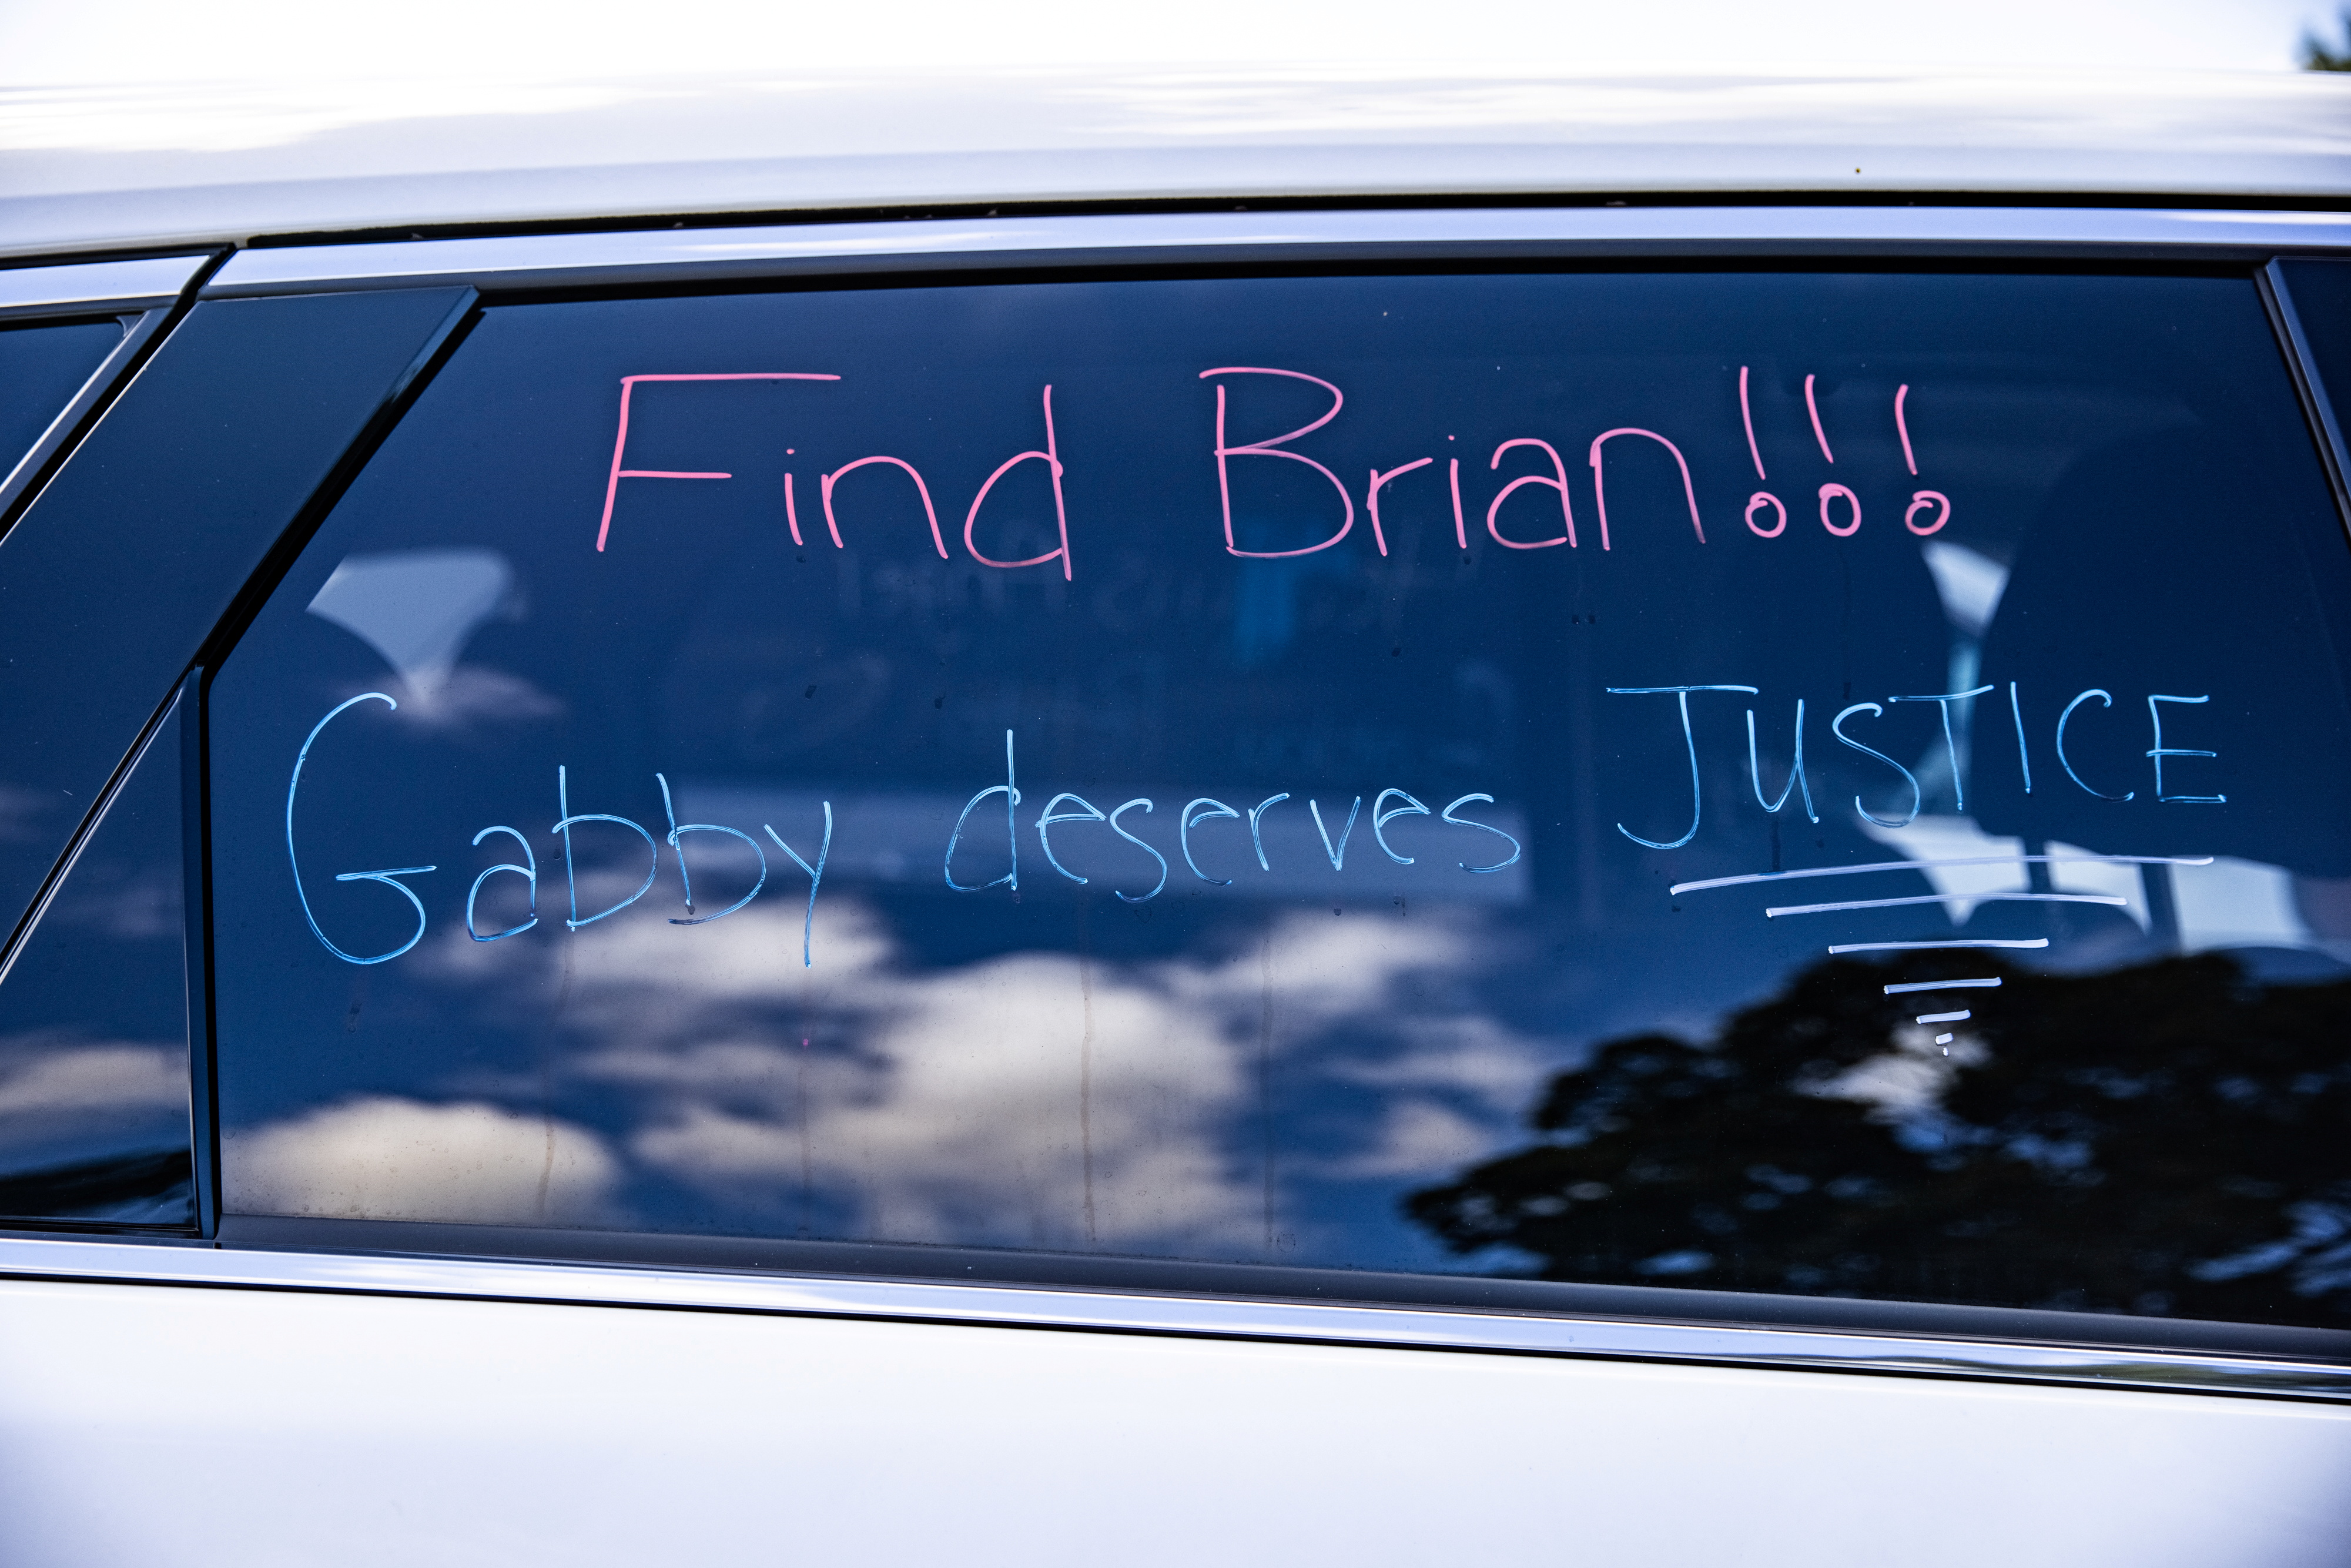 "Encuentren a Brian, Gabby merece justicia", en un cartel en Holbrook, Nueva York (REUTERS/Jeenah Moon)